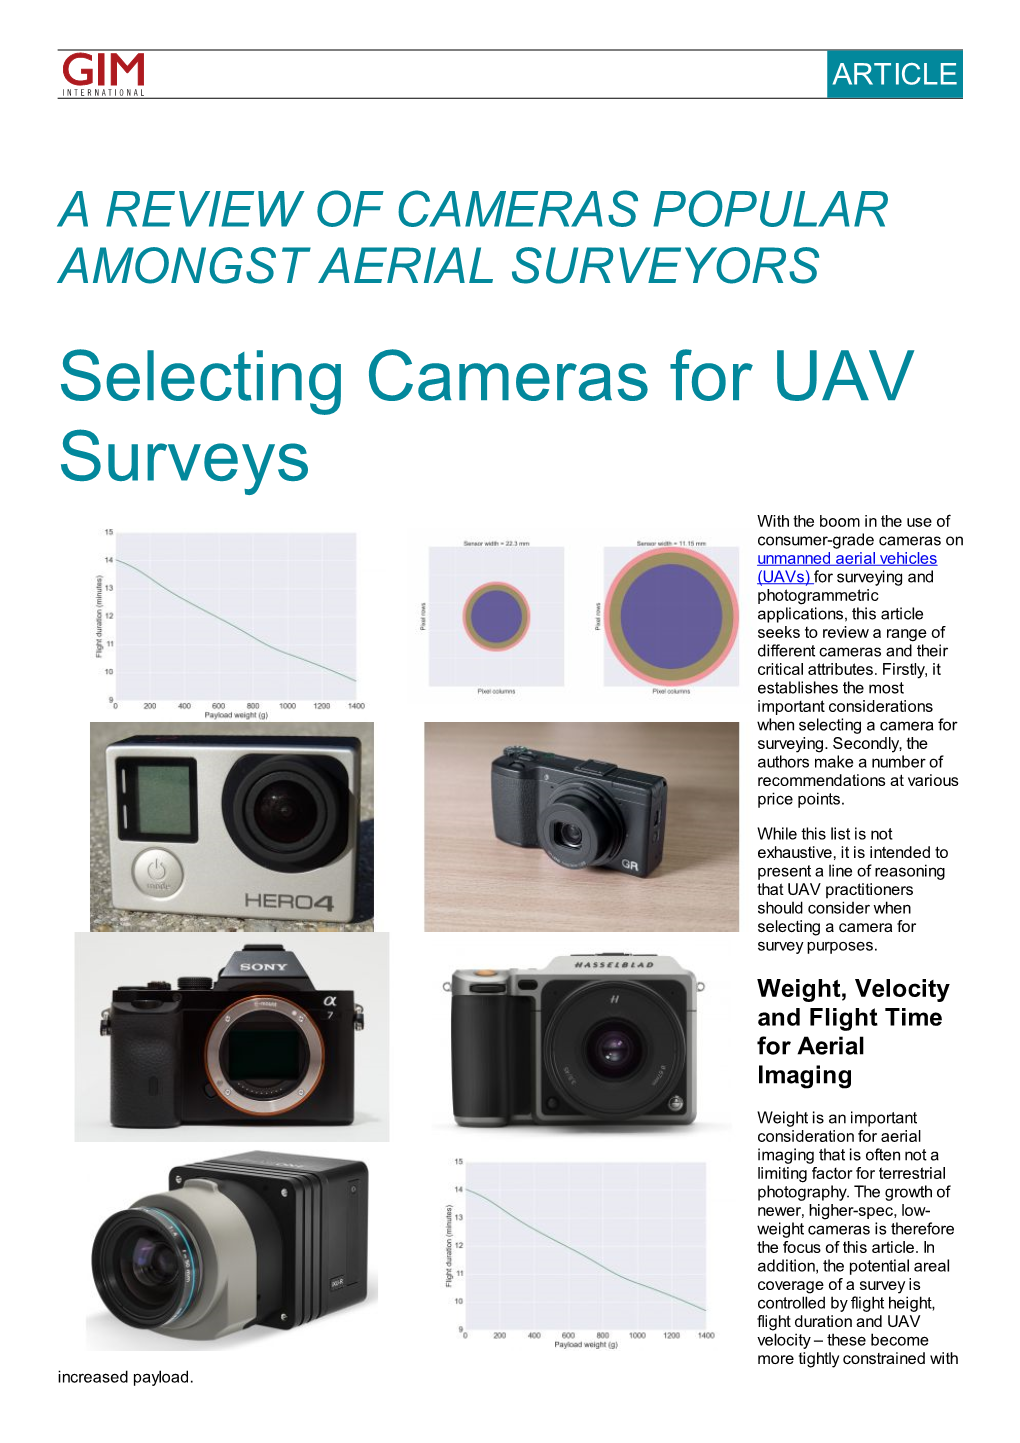 Selecting Cameras for UAV Surveys